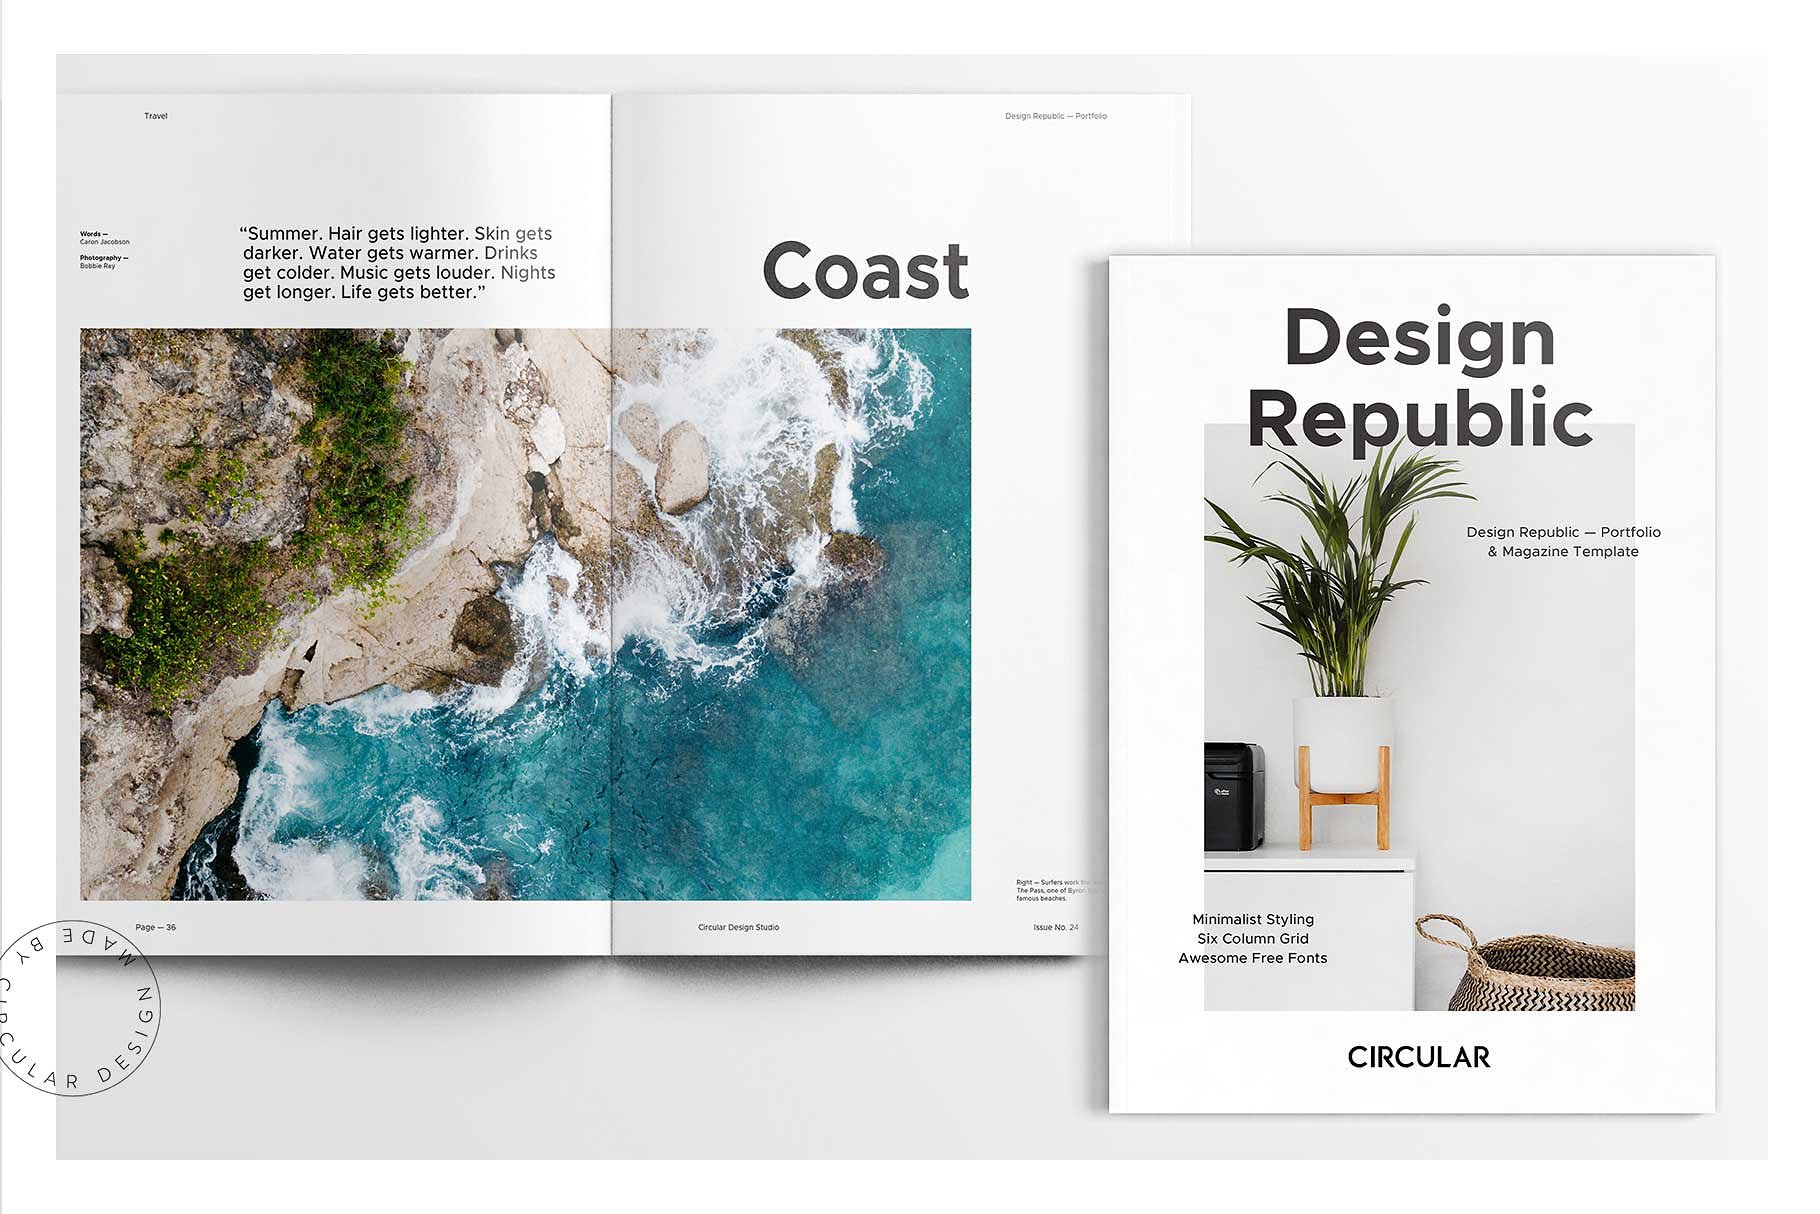 大洋岛下午茶：时尚简约风格的画册手册宣传册楼书InDesign设计模板插图4